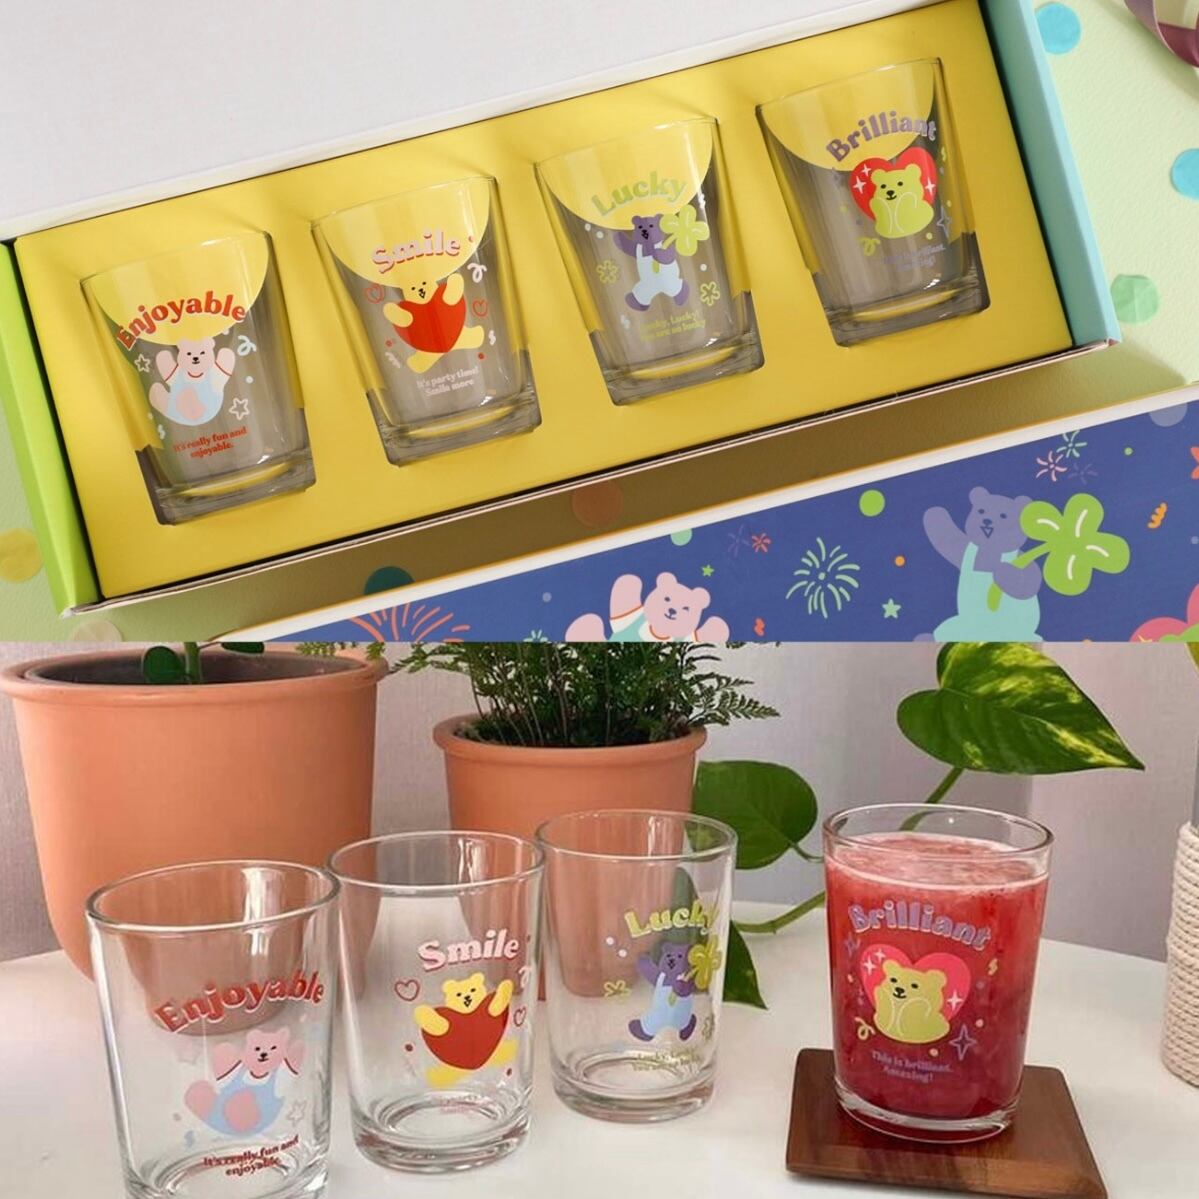 【4個セット】retro character cup set 238ml / レトロ キャラクター コップ セット ベア ガラス 韓国雑貨